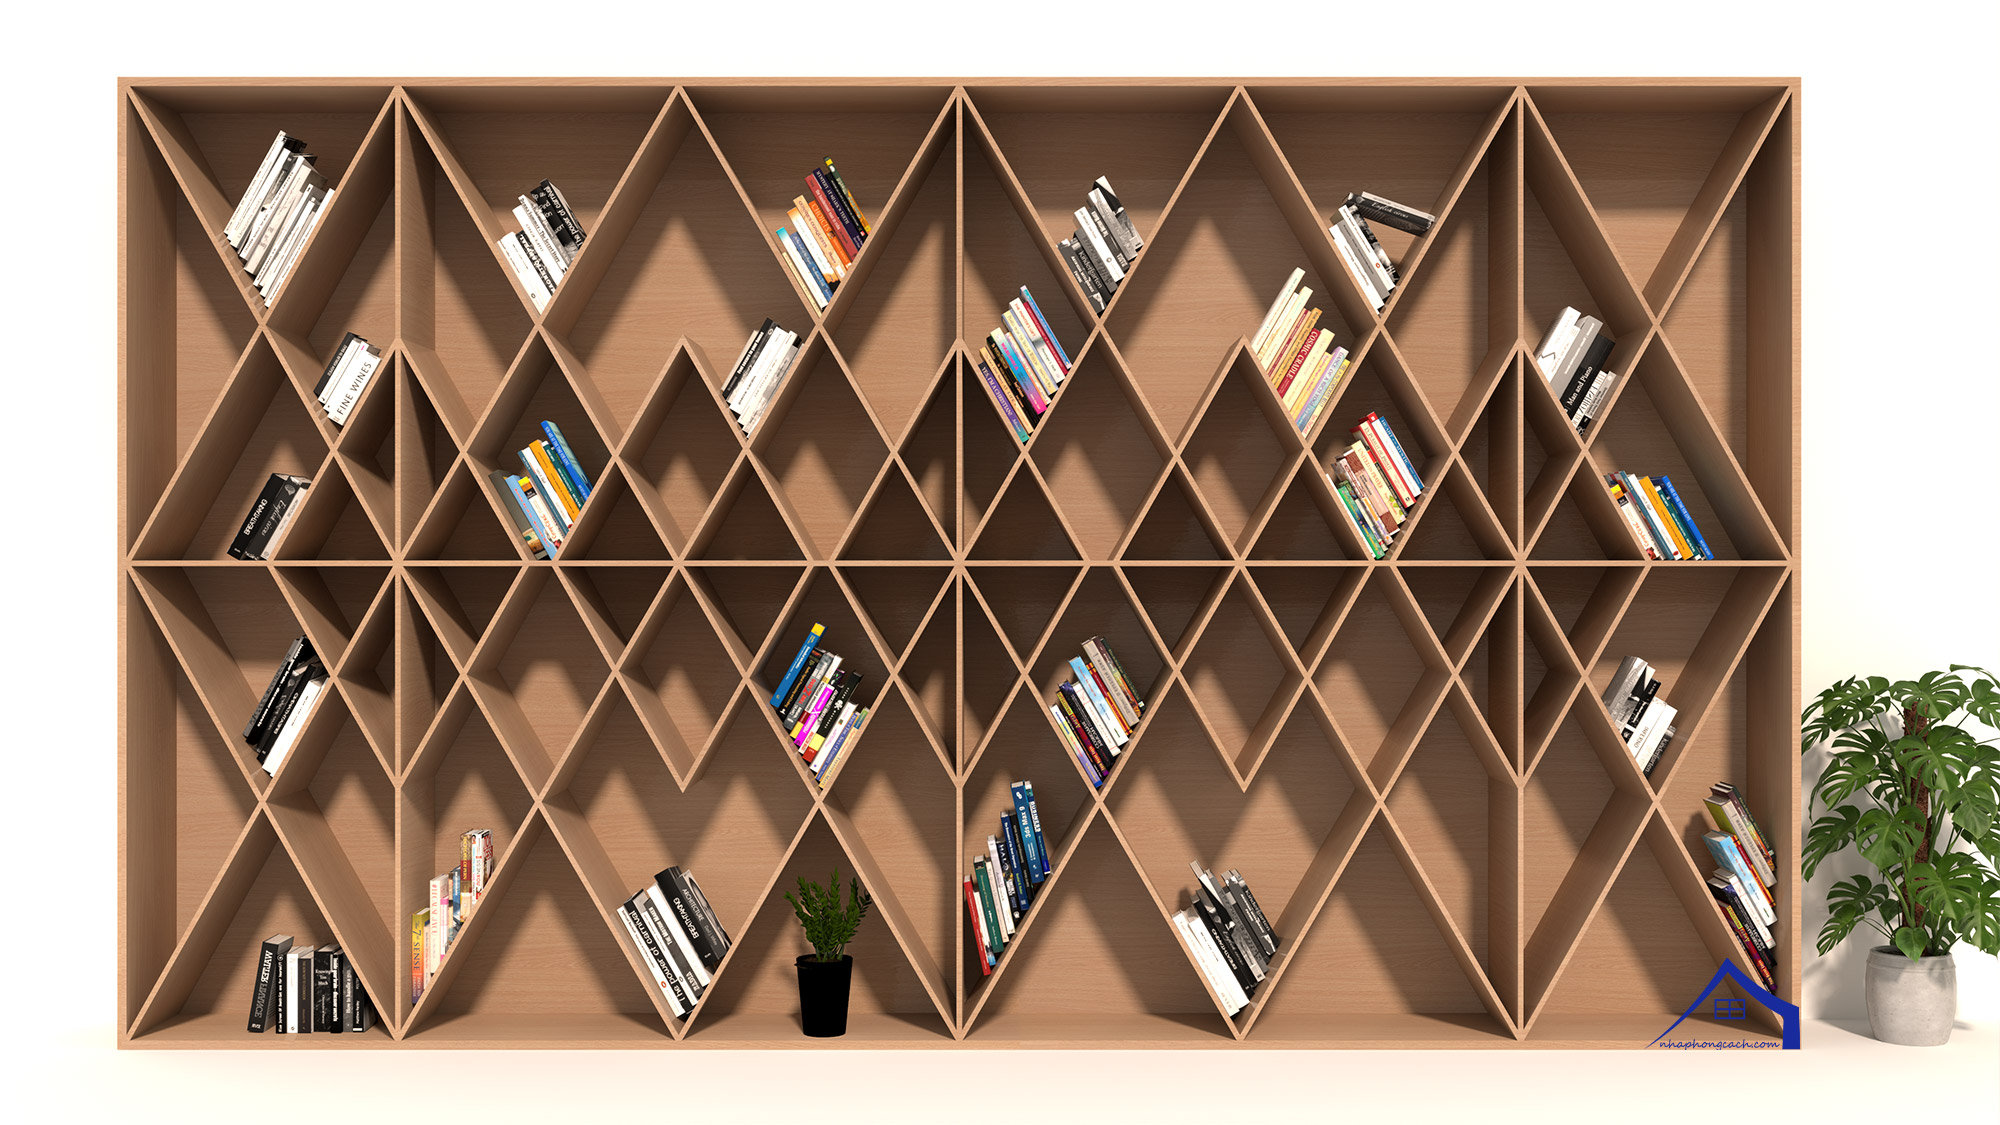 ke-sach-hinh-thoi (rhombus shaped bookshelf)